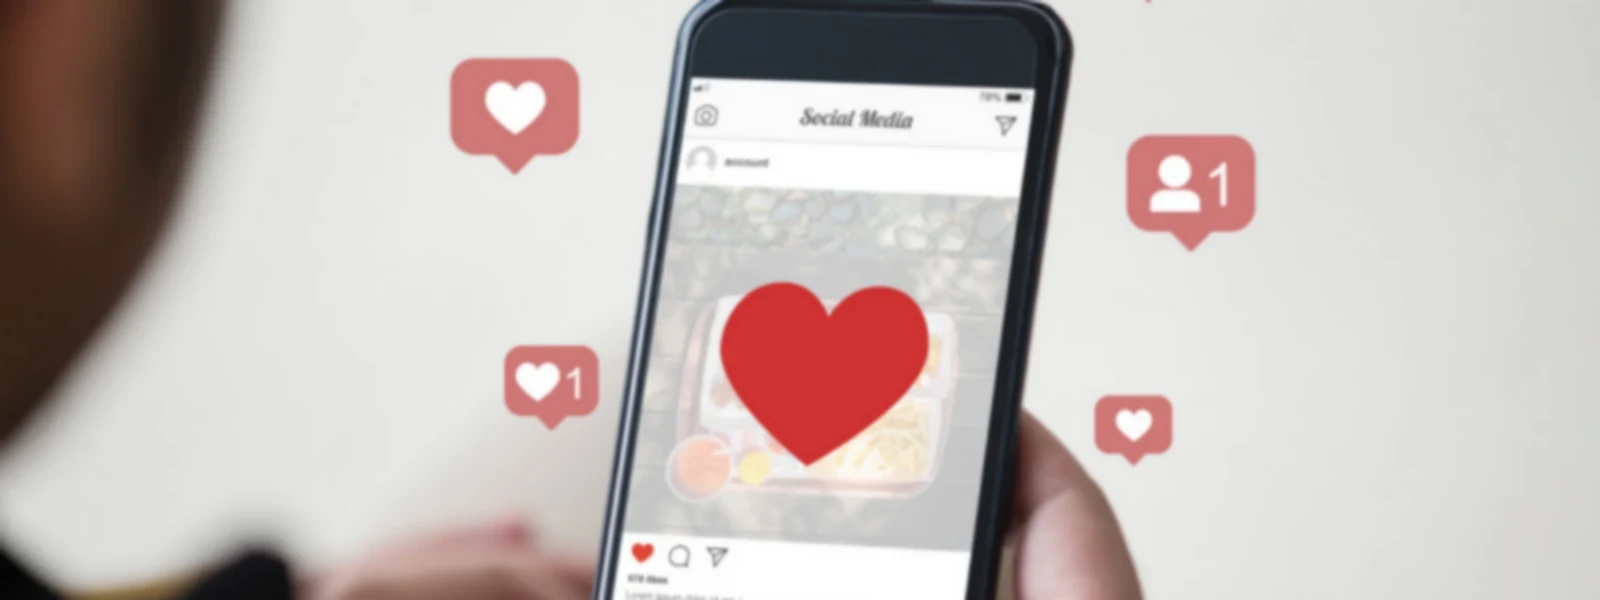 Instagram Hoogtepunten inrichten - icons maken en bewerken.